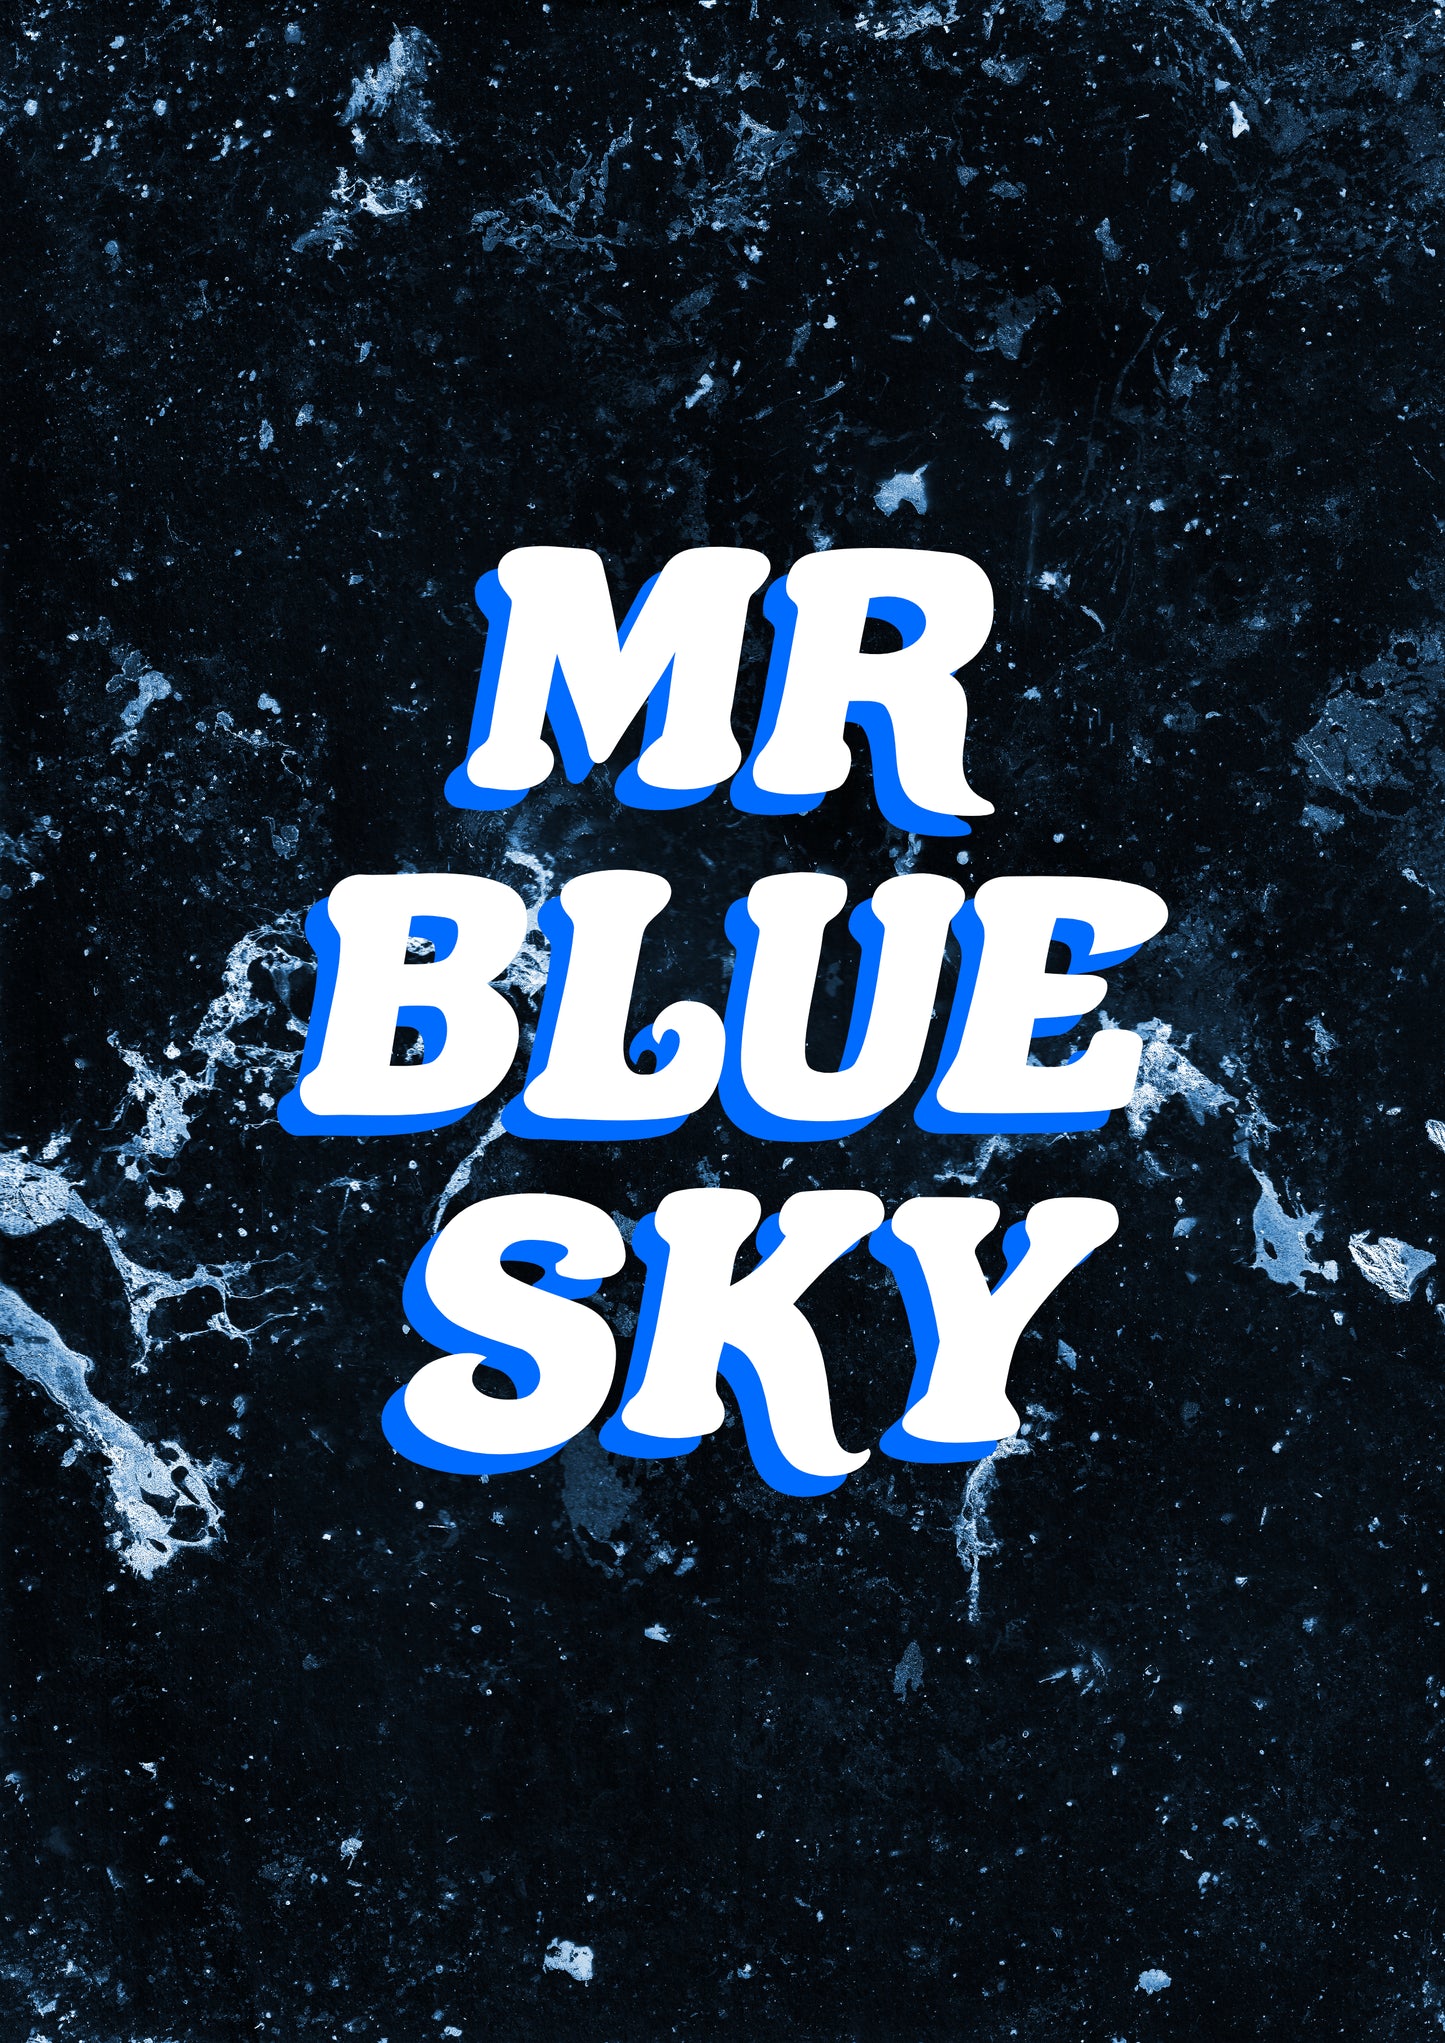 MR BLUE SKY